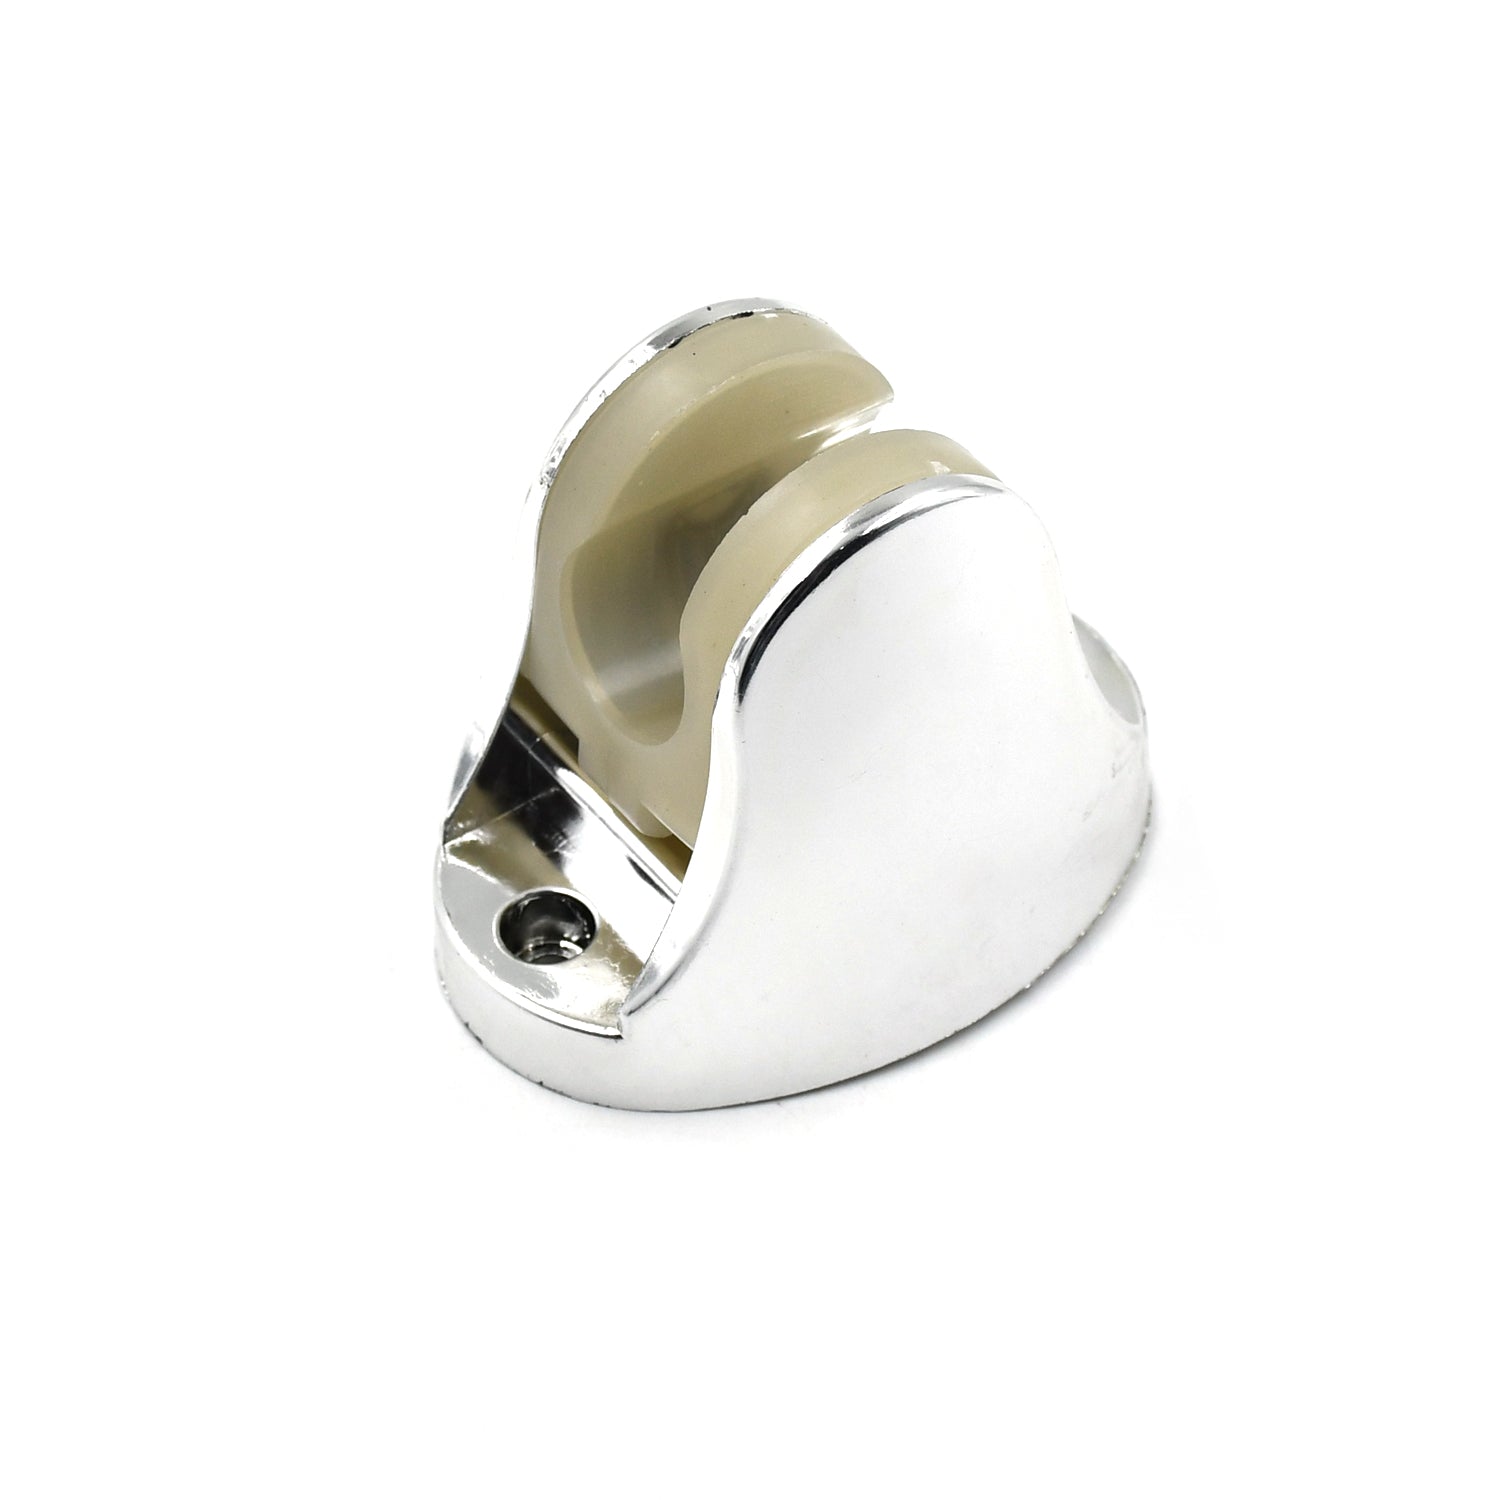 6255A  Adjustable Hand Shower Holder with Fixing Screws Adjustable Bracket for Bathroom